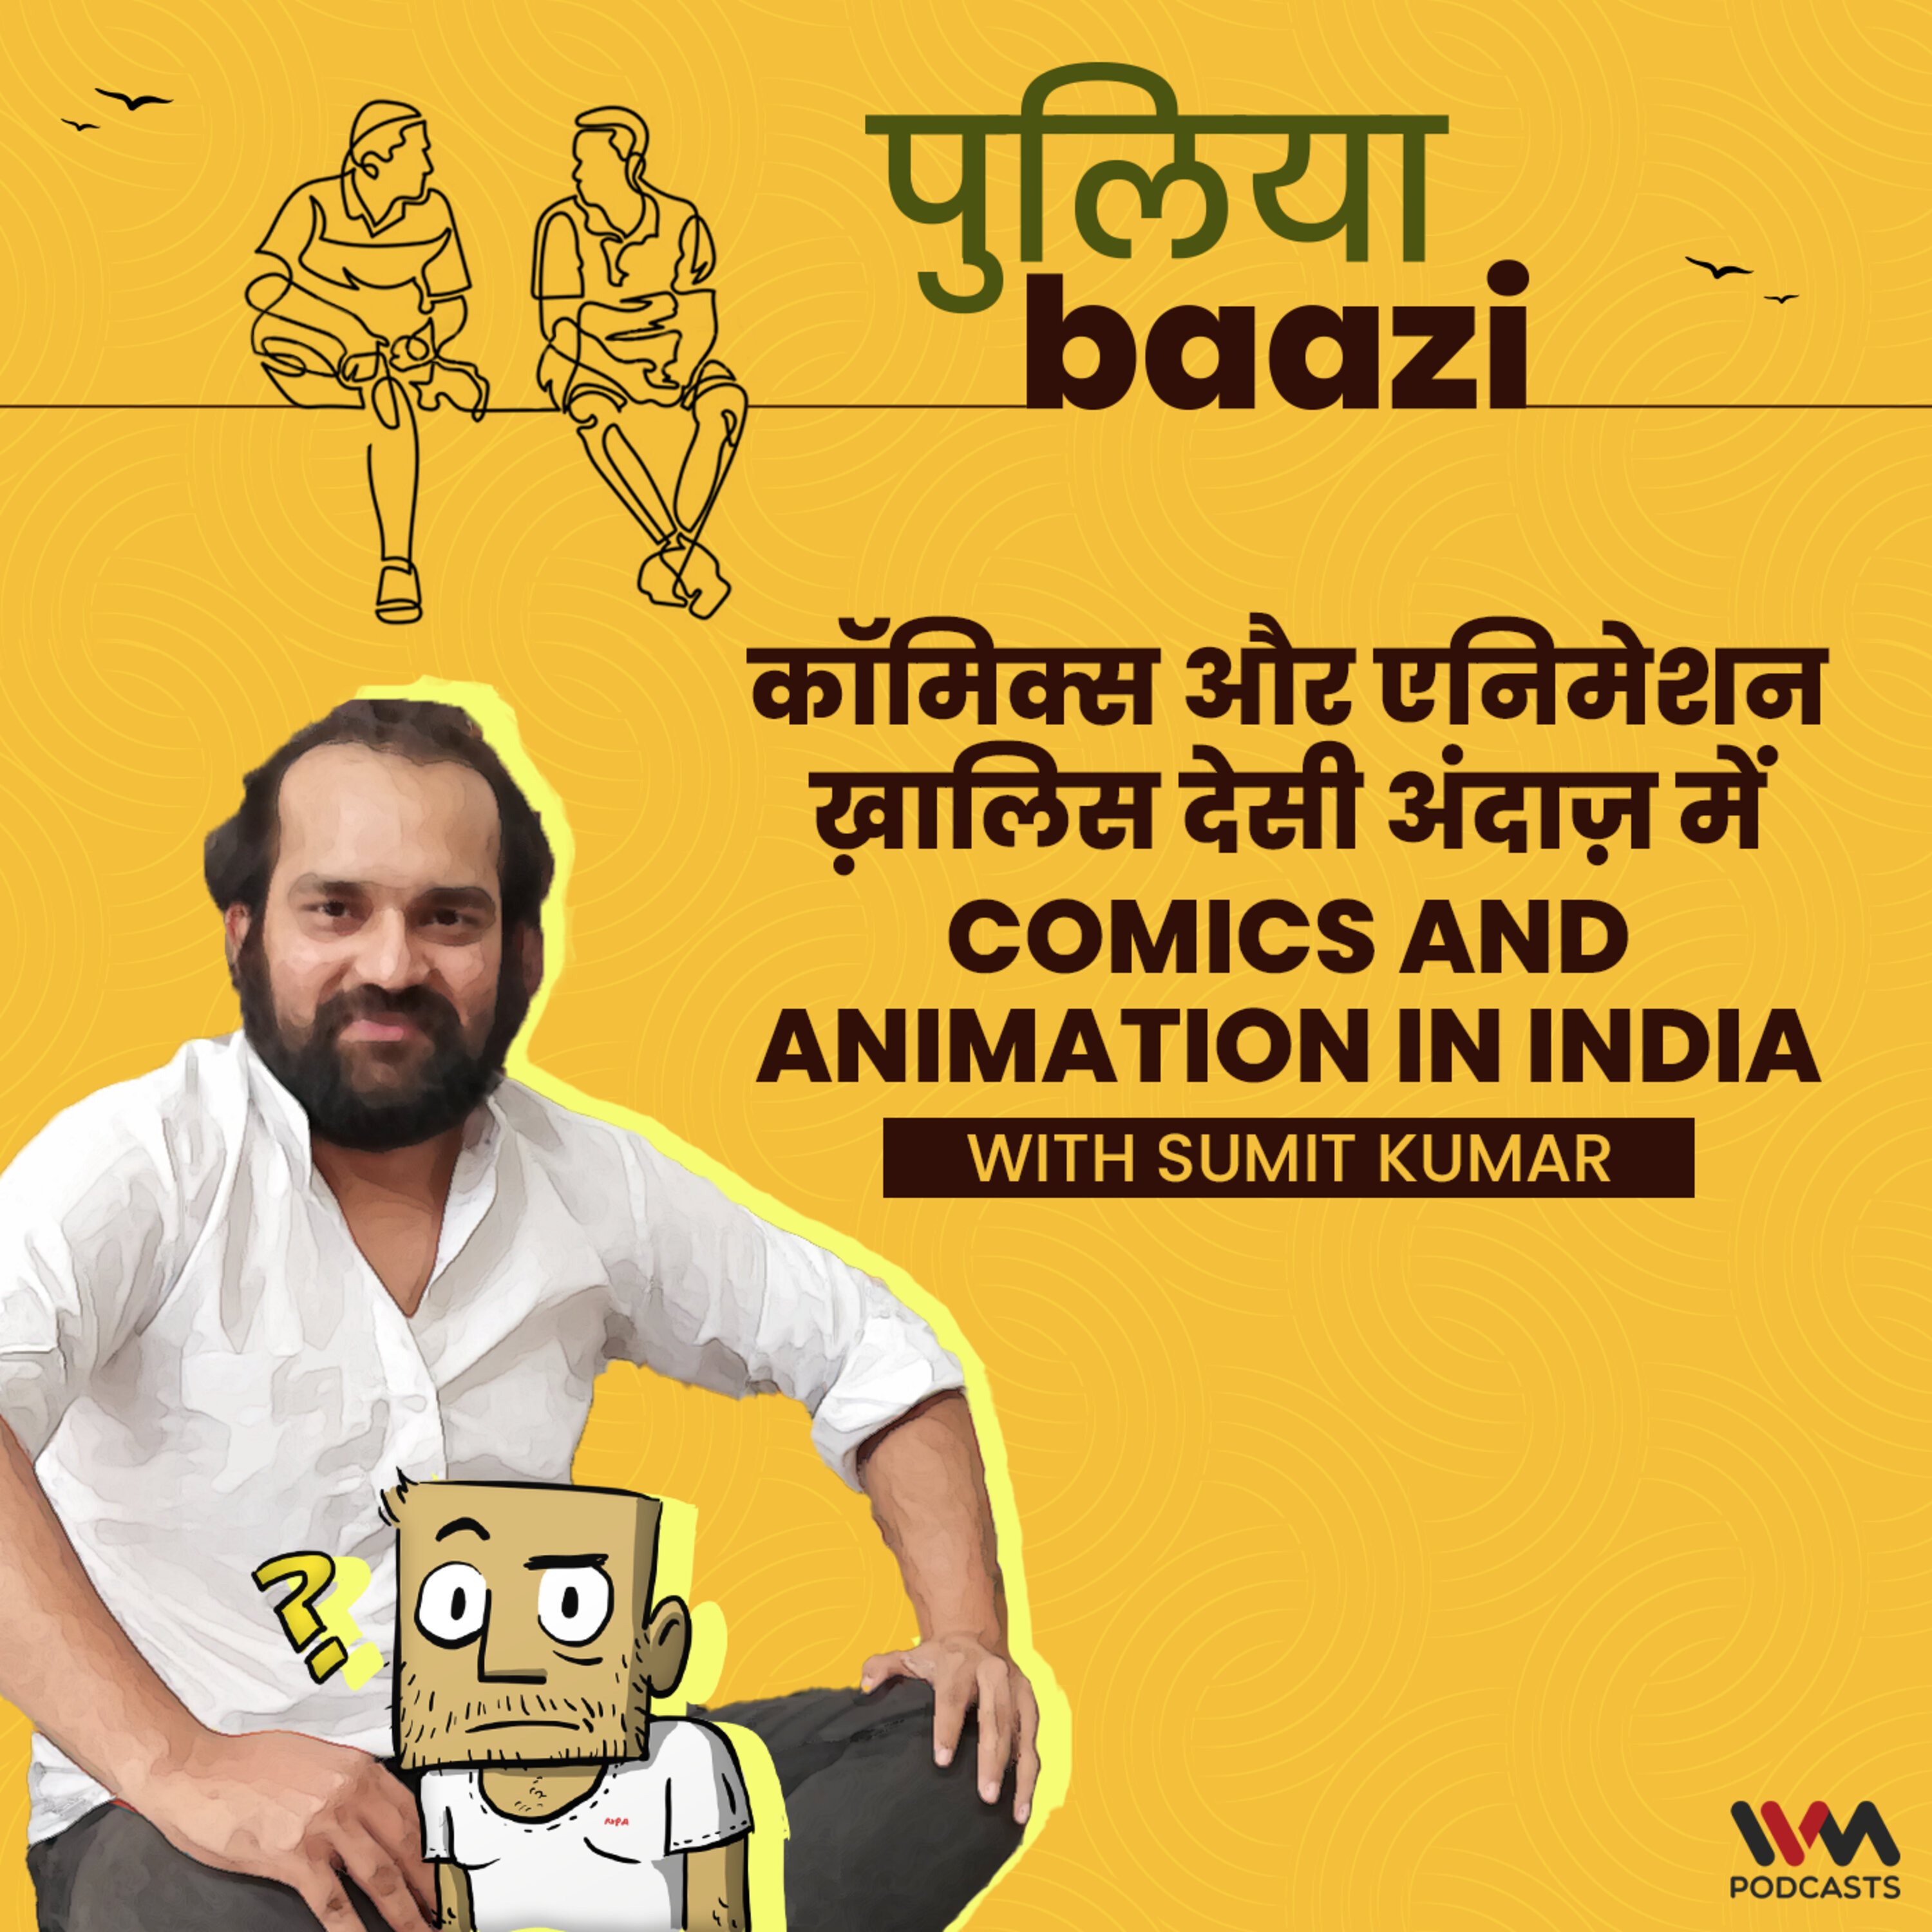 कॉमिक्स और एनिमेशन ख़ालिस देसी अंदाज़ में। Comics and Animation in India ft. Sumit Kumar